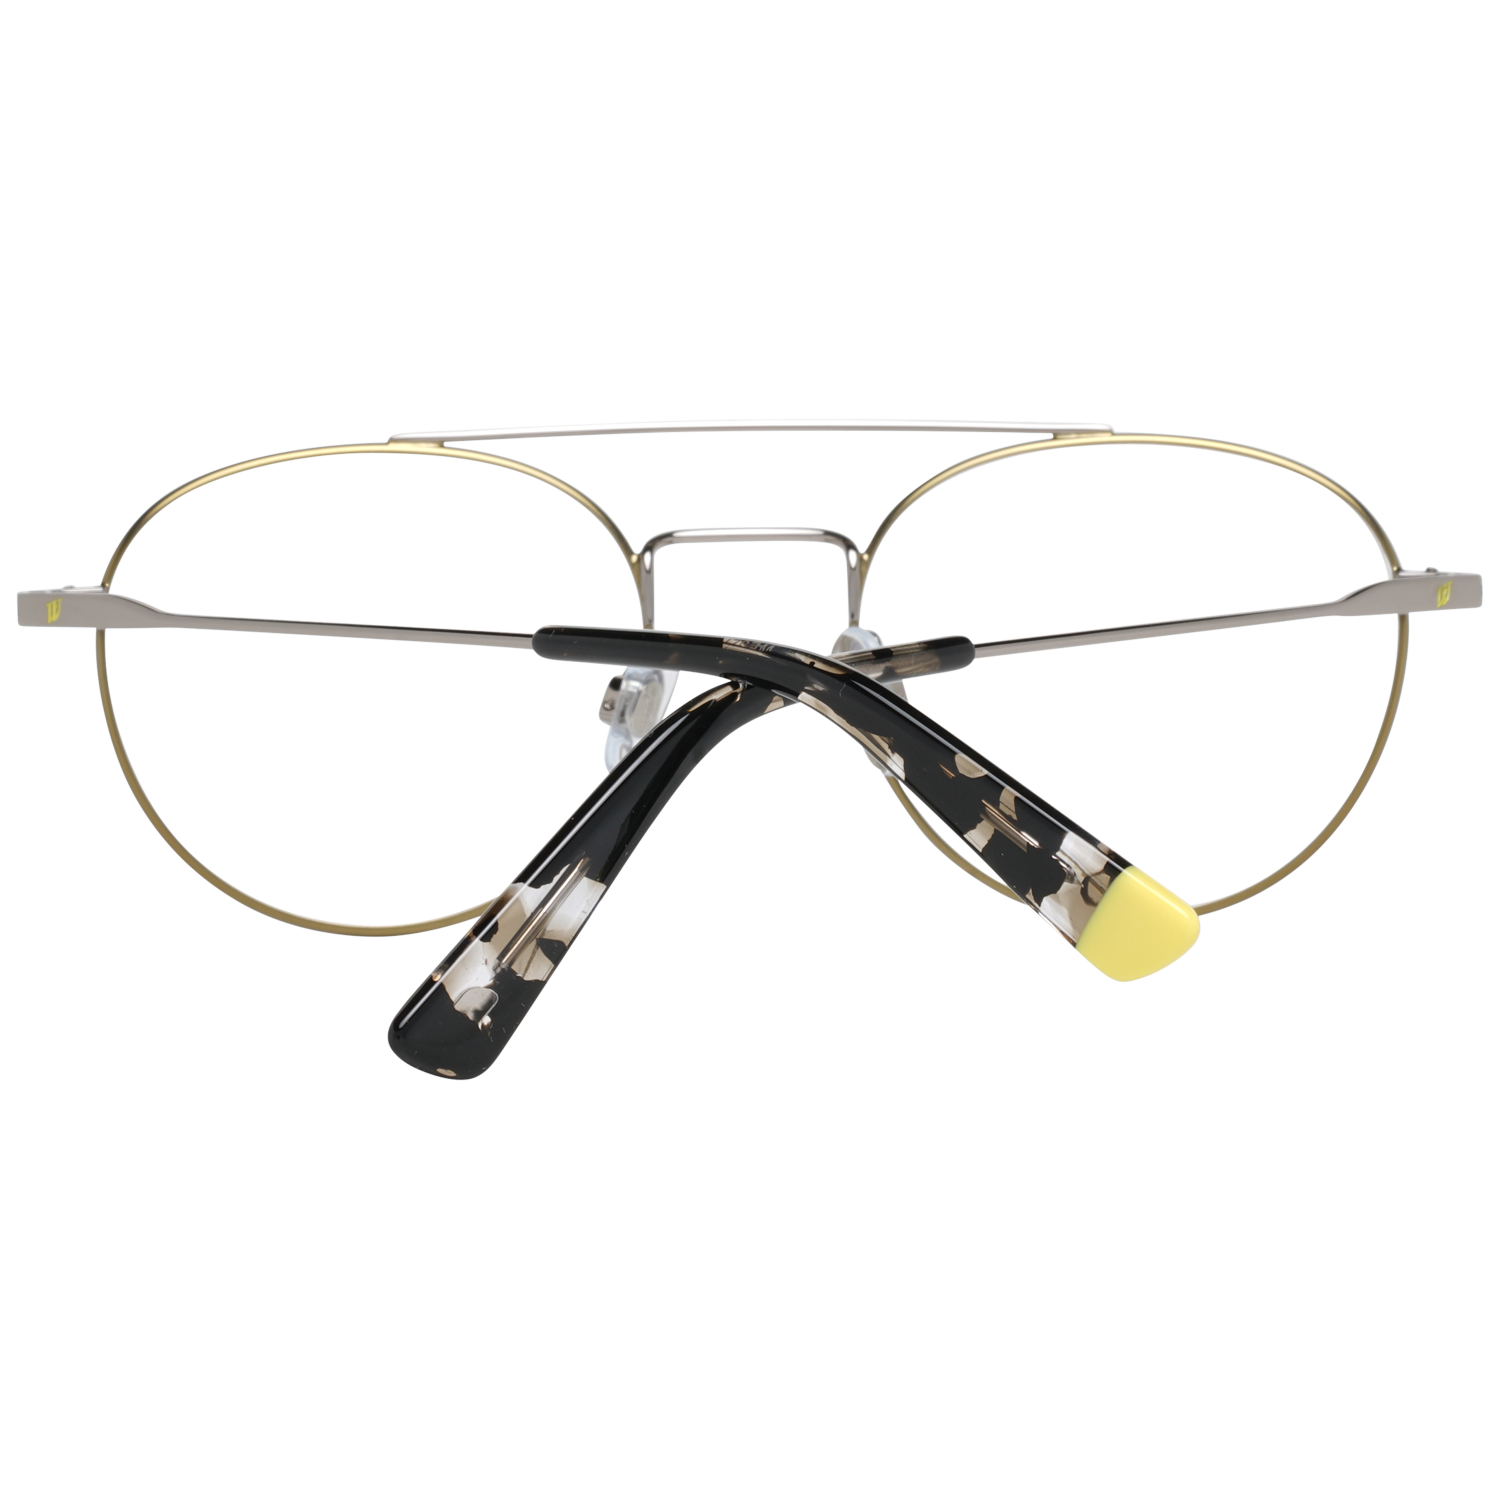 Web Frames Web Glasses Optical Frame WE5271 008 51 Eyeglasses Eyewear UK USA Australia 